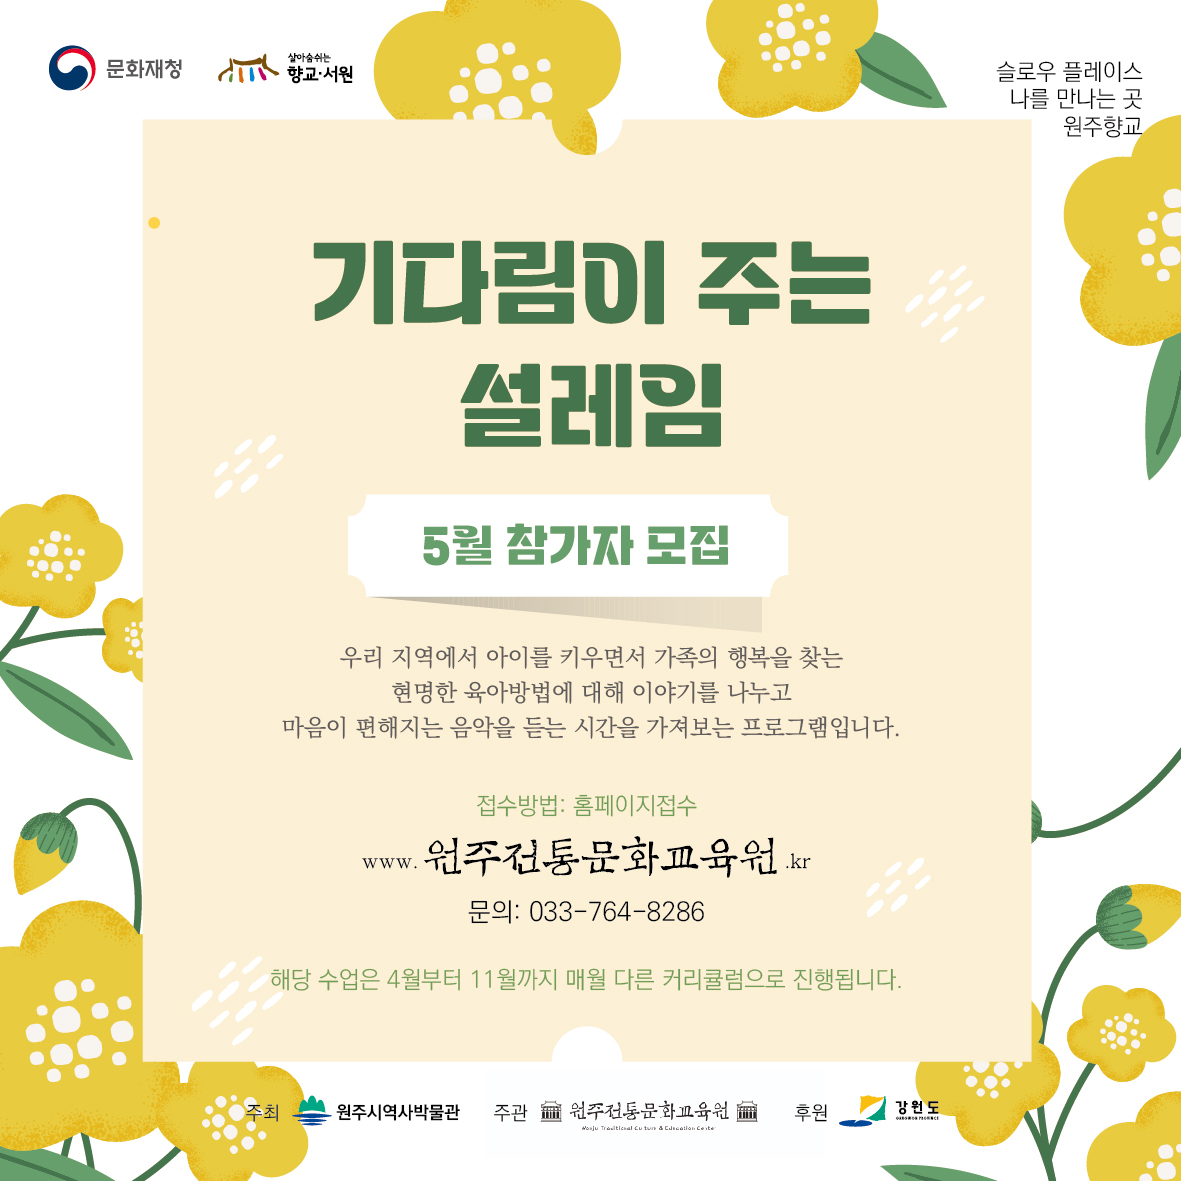 5월 기다림이주는설레임 - 태교강연과공연